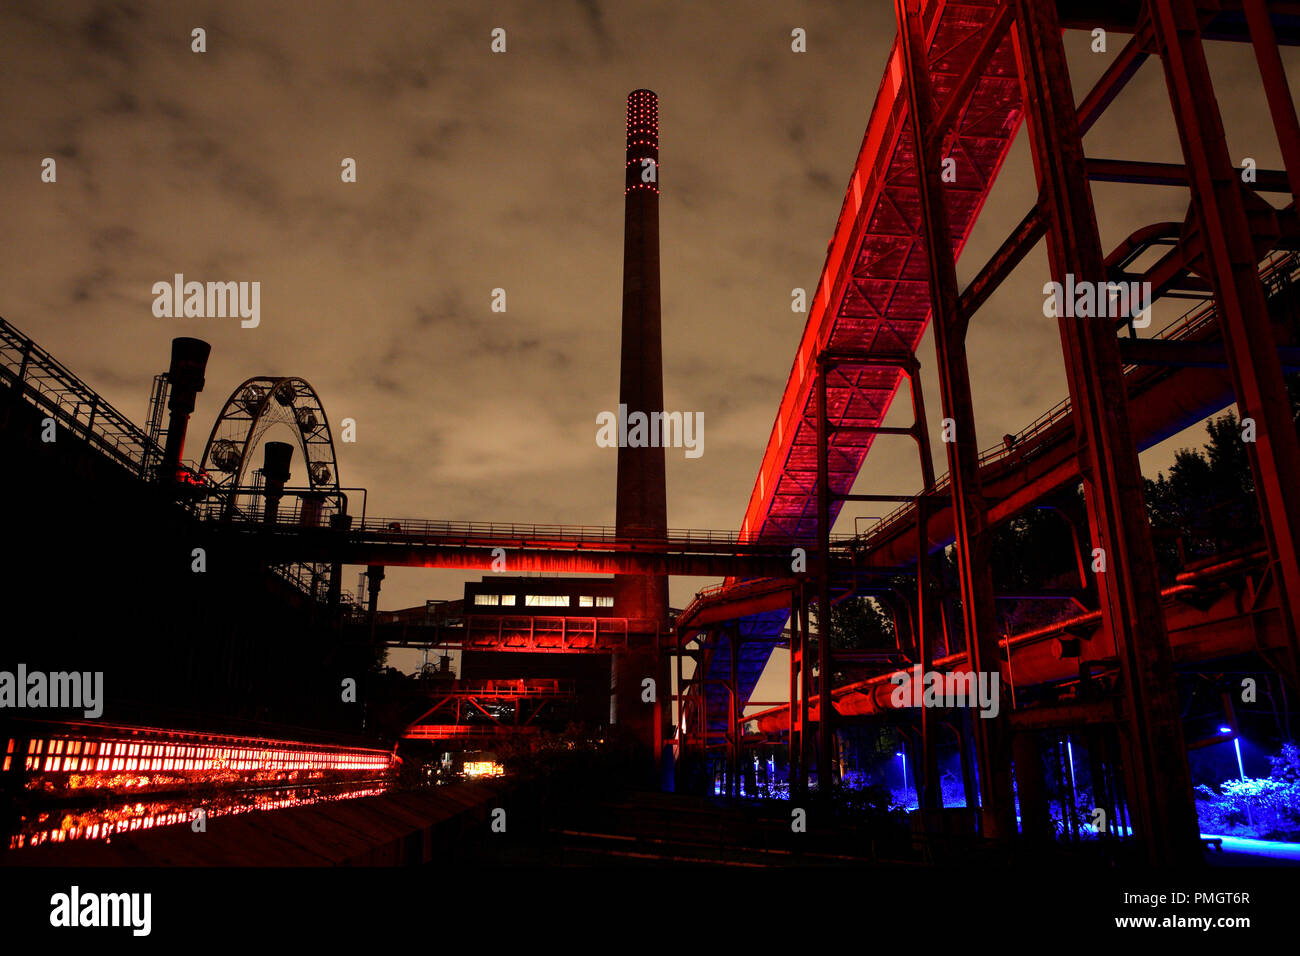 Kokarei della miniera di carbone Zollverein patrimonio culturale del mondo di Essen. Con l'insorgenza di crepuscolo, la creazione di set di illuminazione in Cali e il contesto industriale della luce rossa. Foto Stock